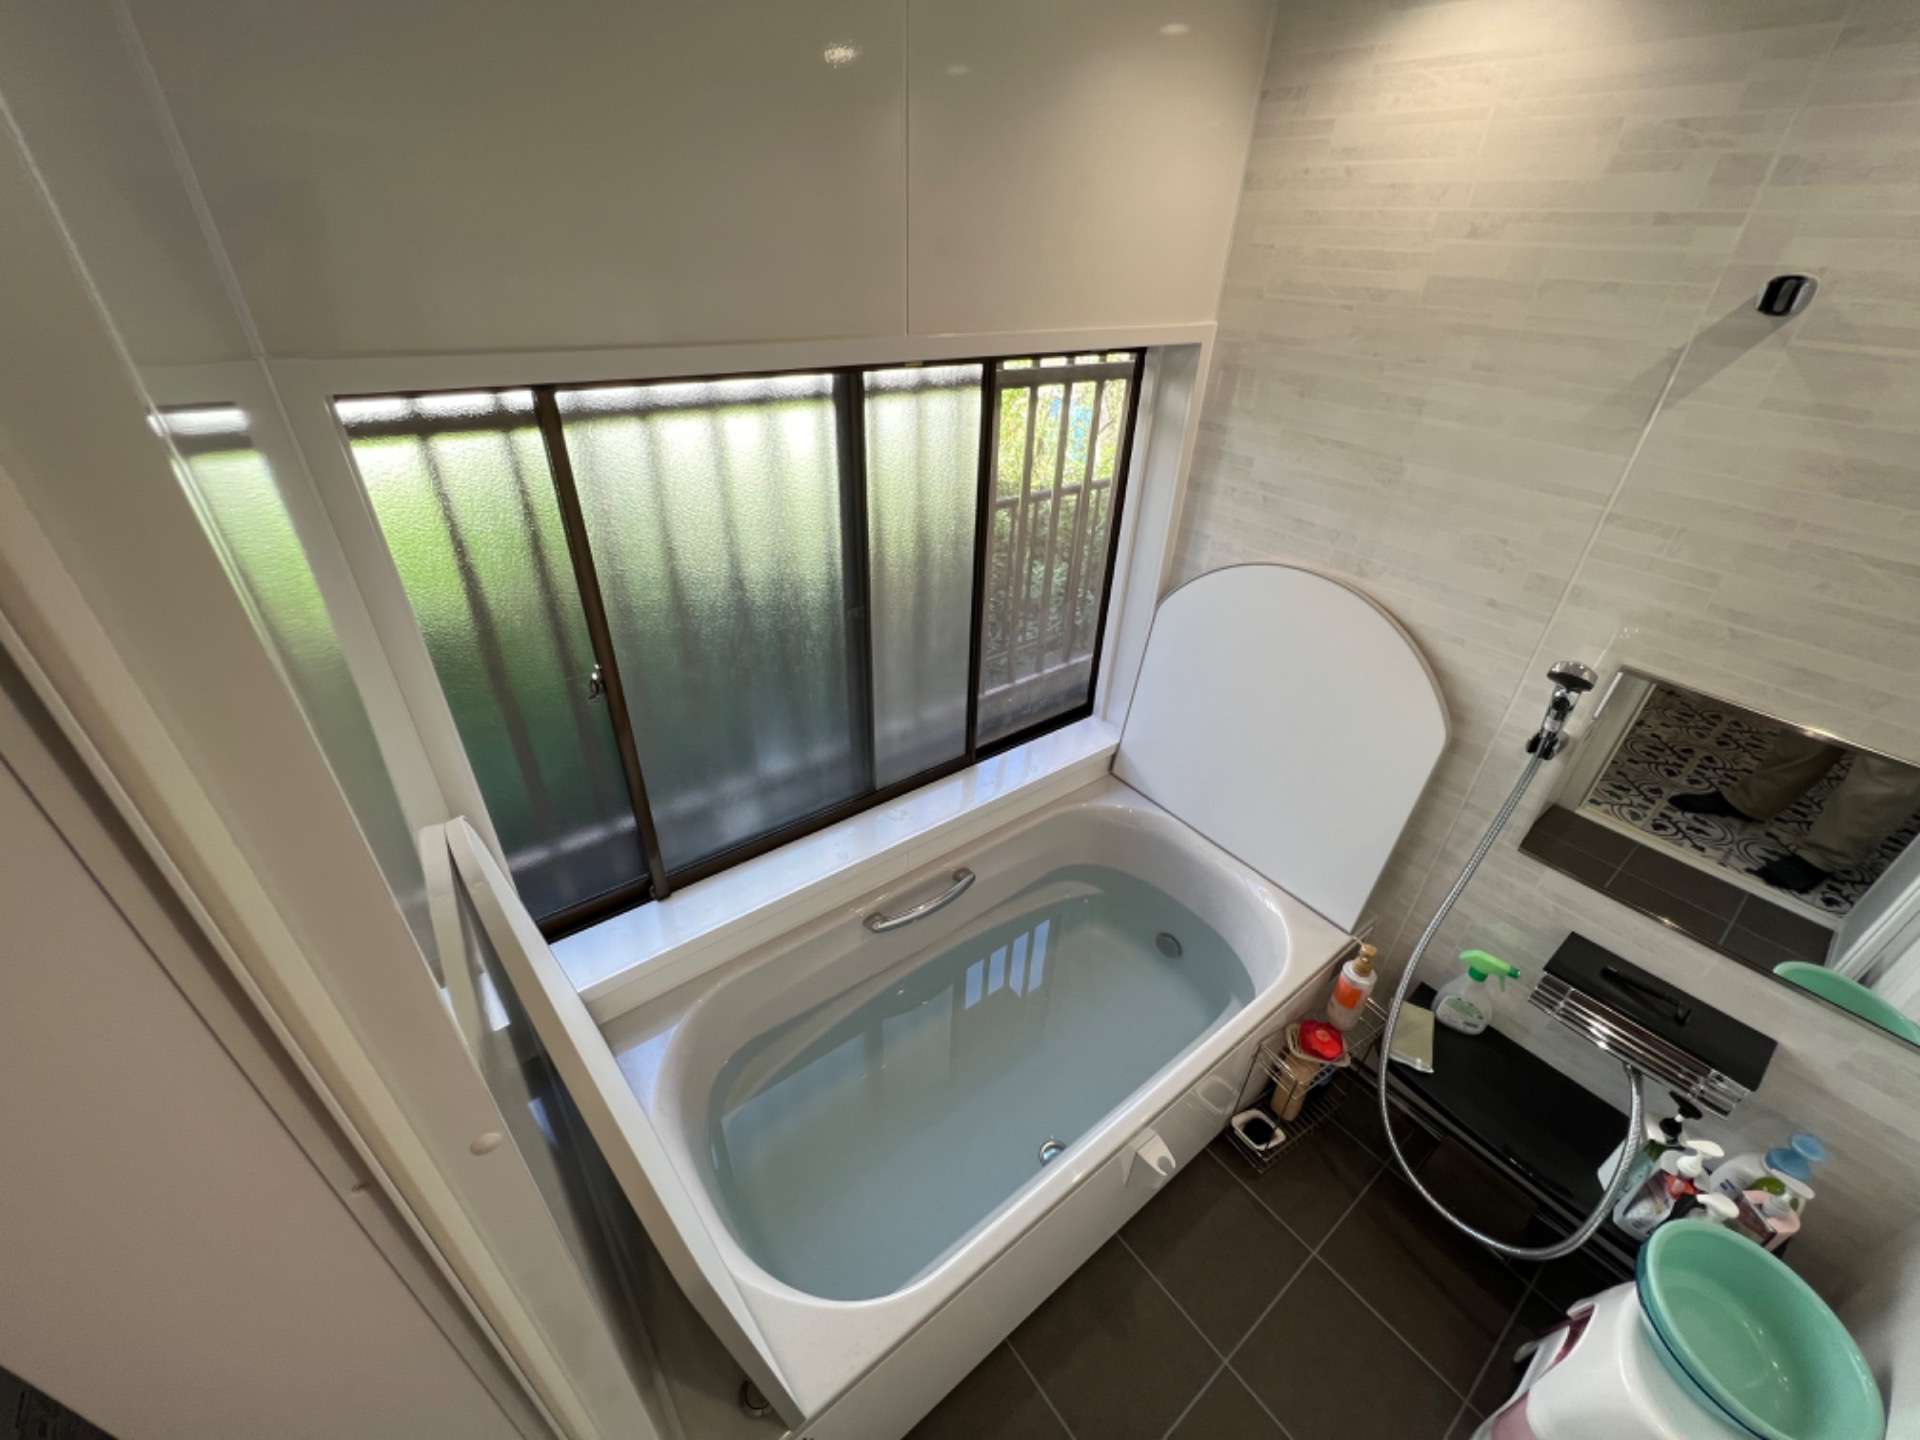 知多市にて浴室のリフォーム完成です。